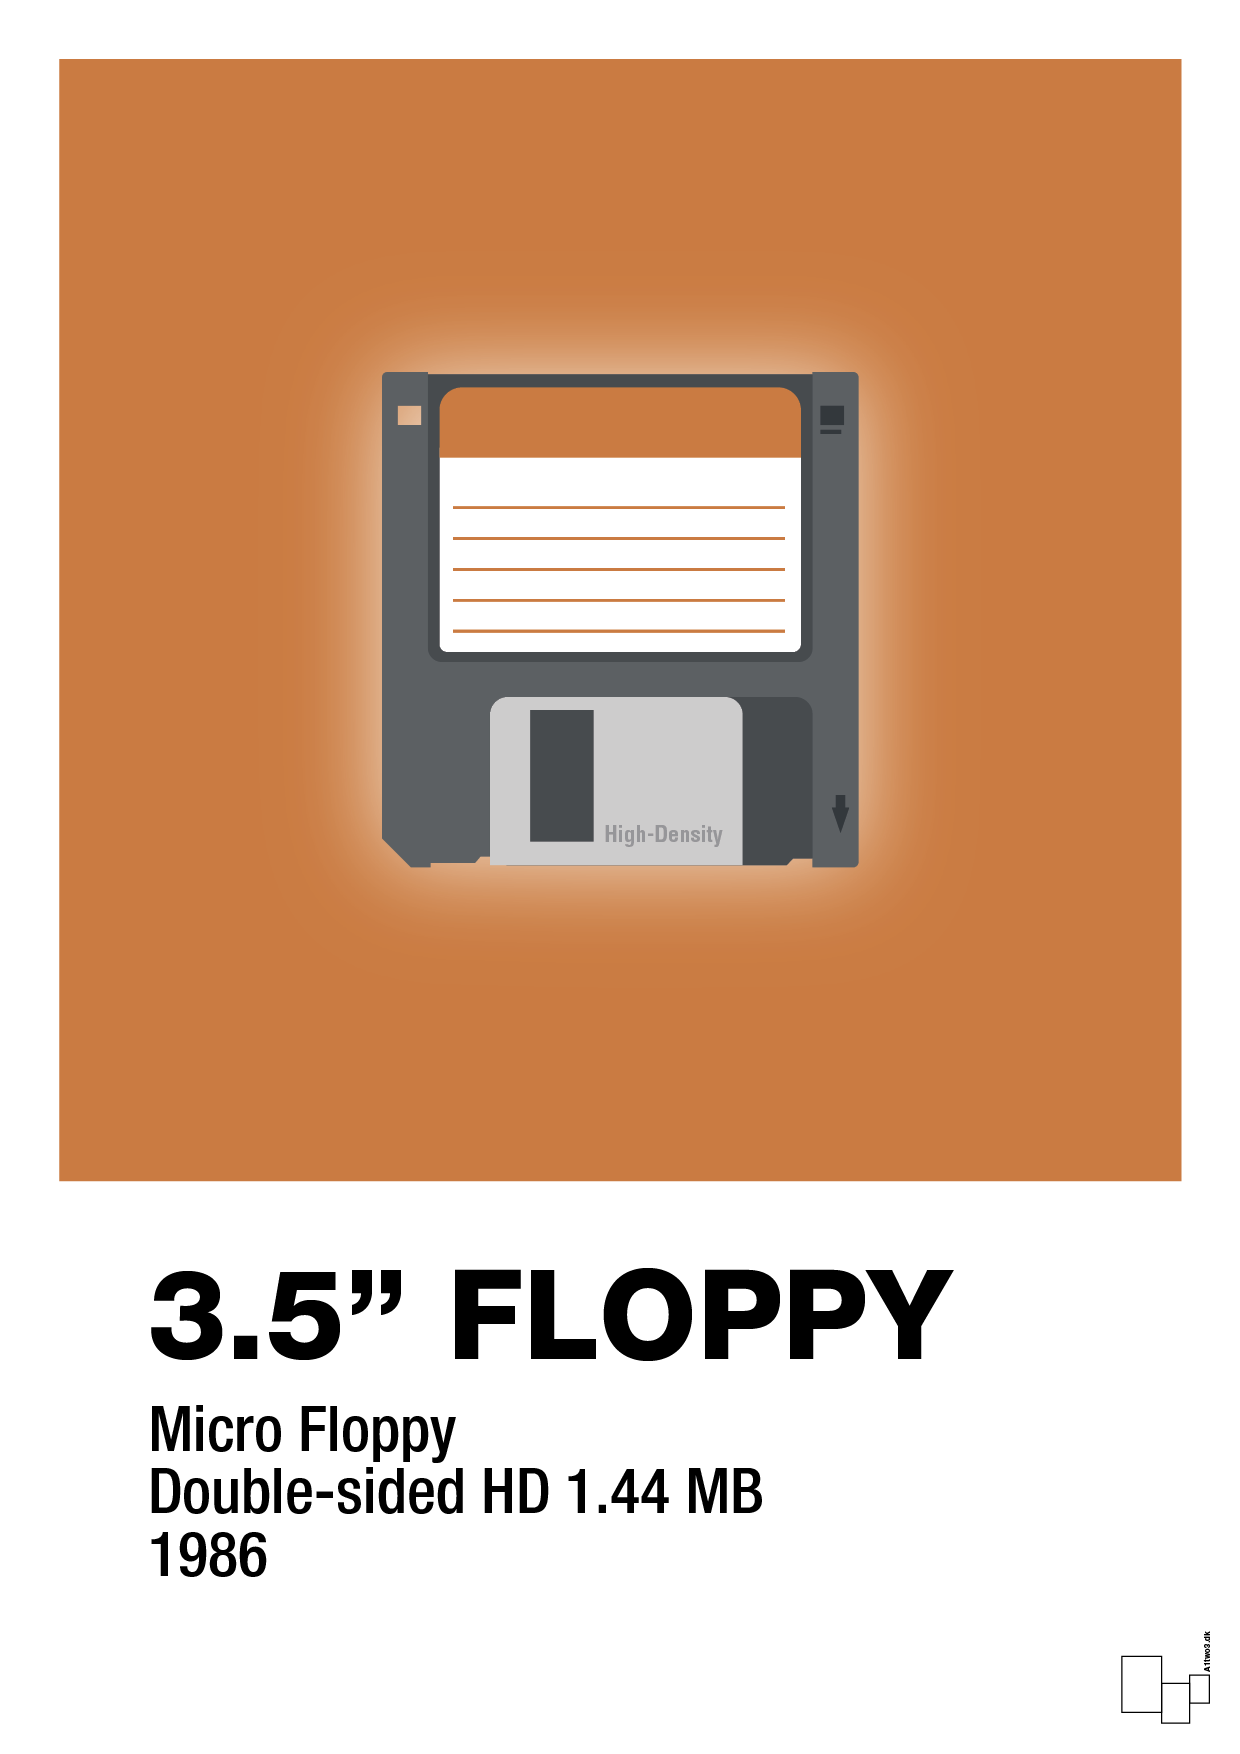 floppy disc 3.5" - Plakat med Grafik i Rumba Orange